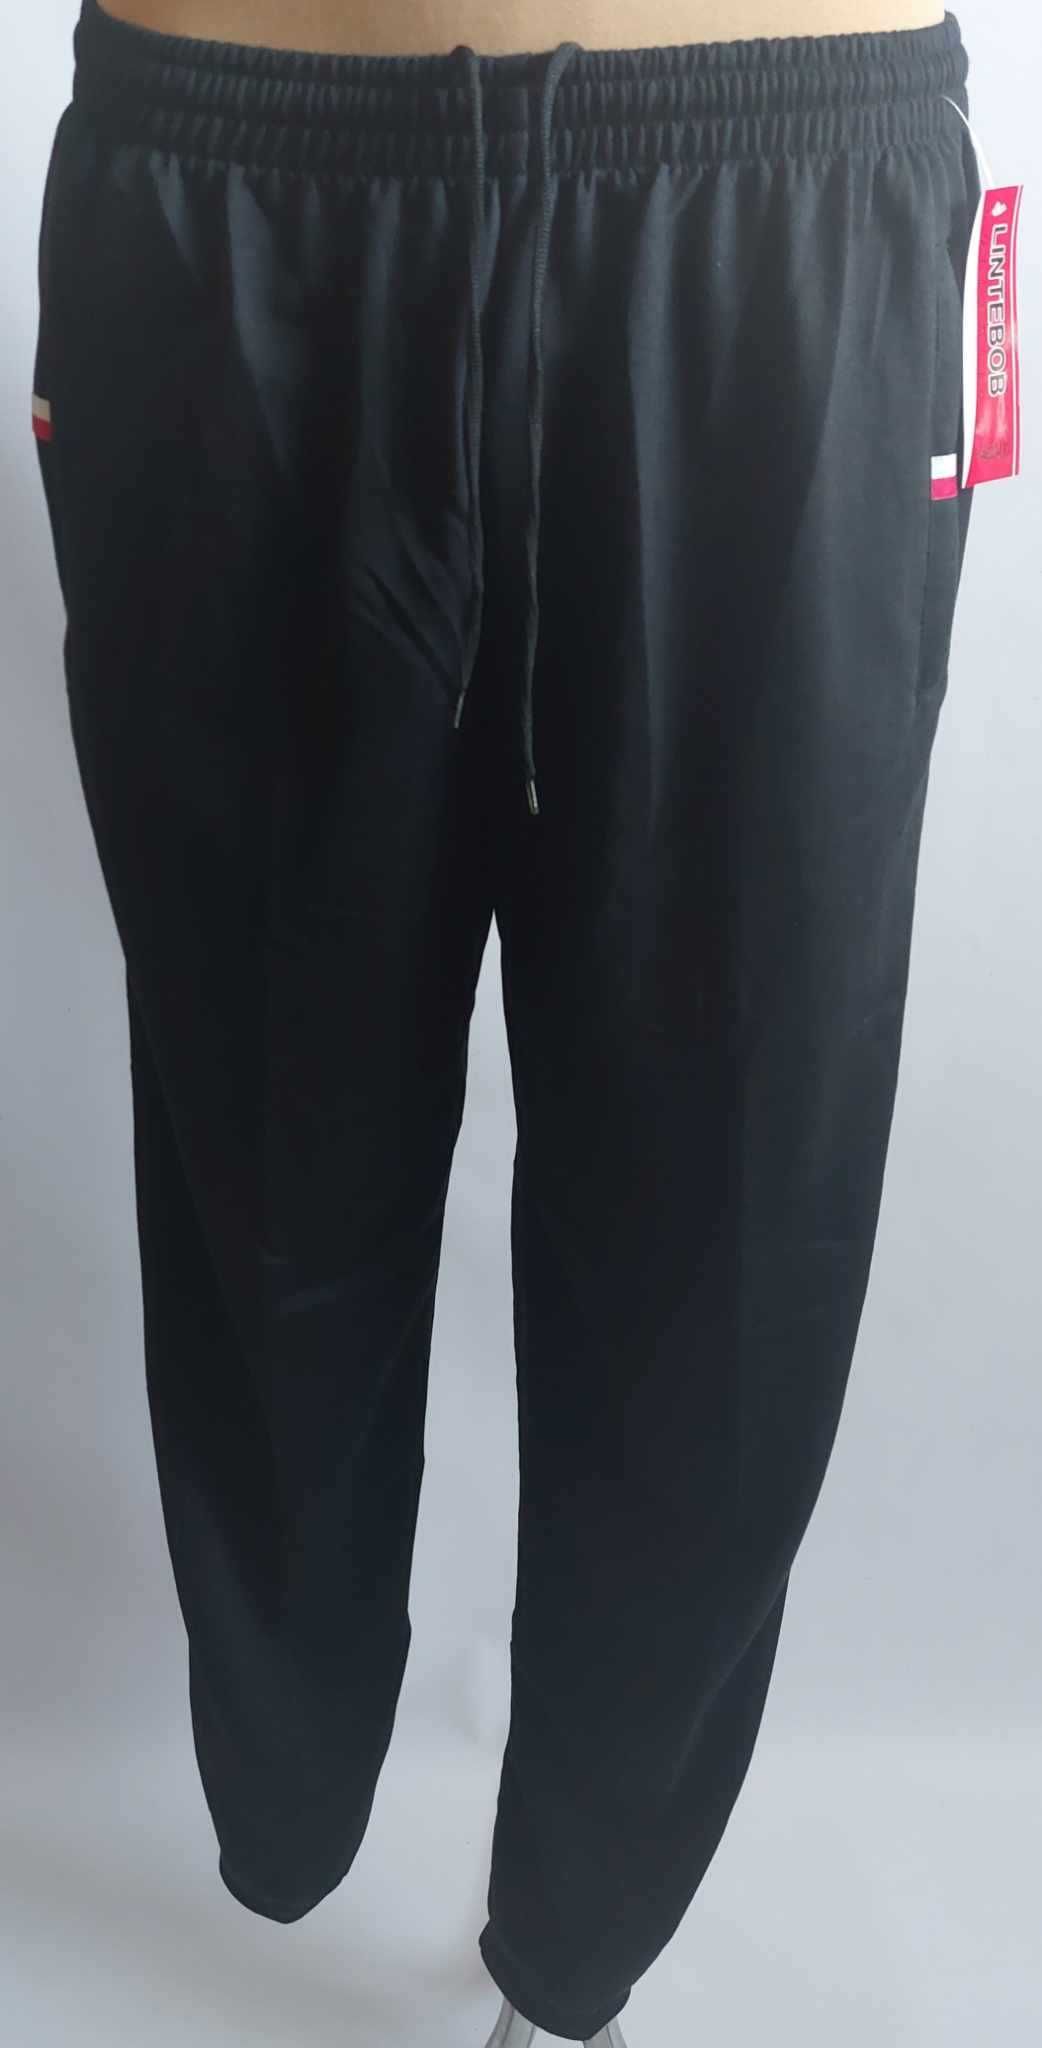 Spodnie męskie dresowe czarne ze ściągaczami LINTEBOB Y-46333-LK r 2XL